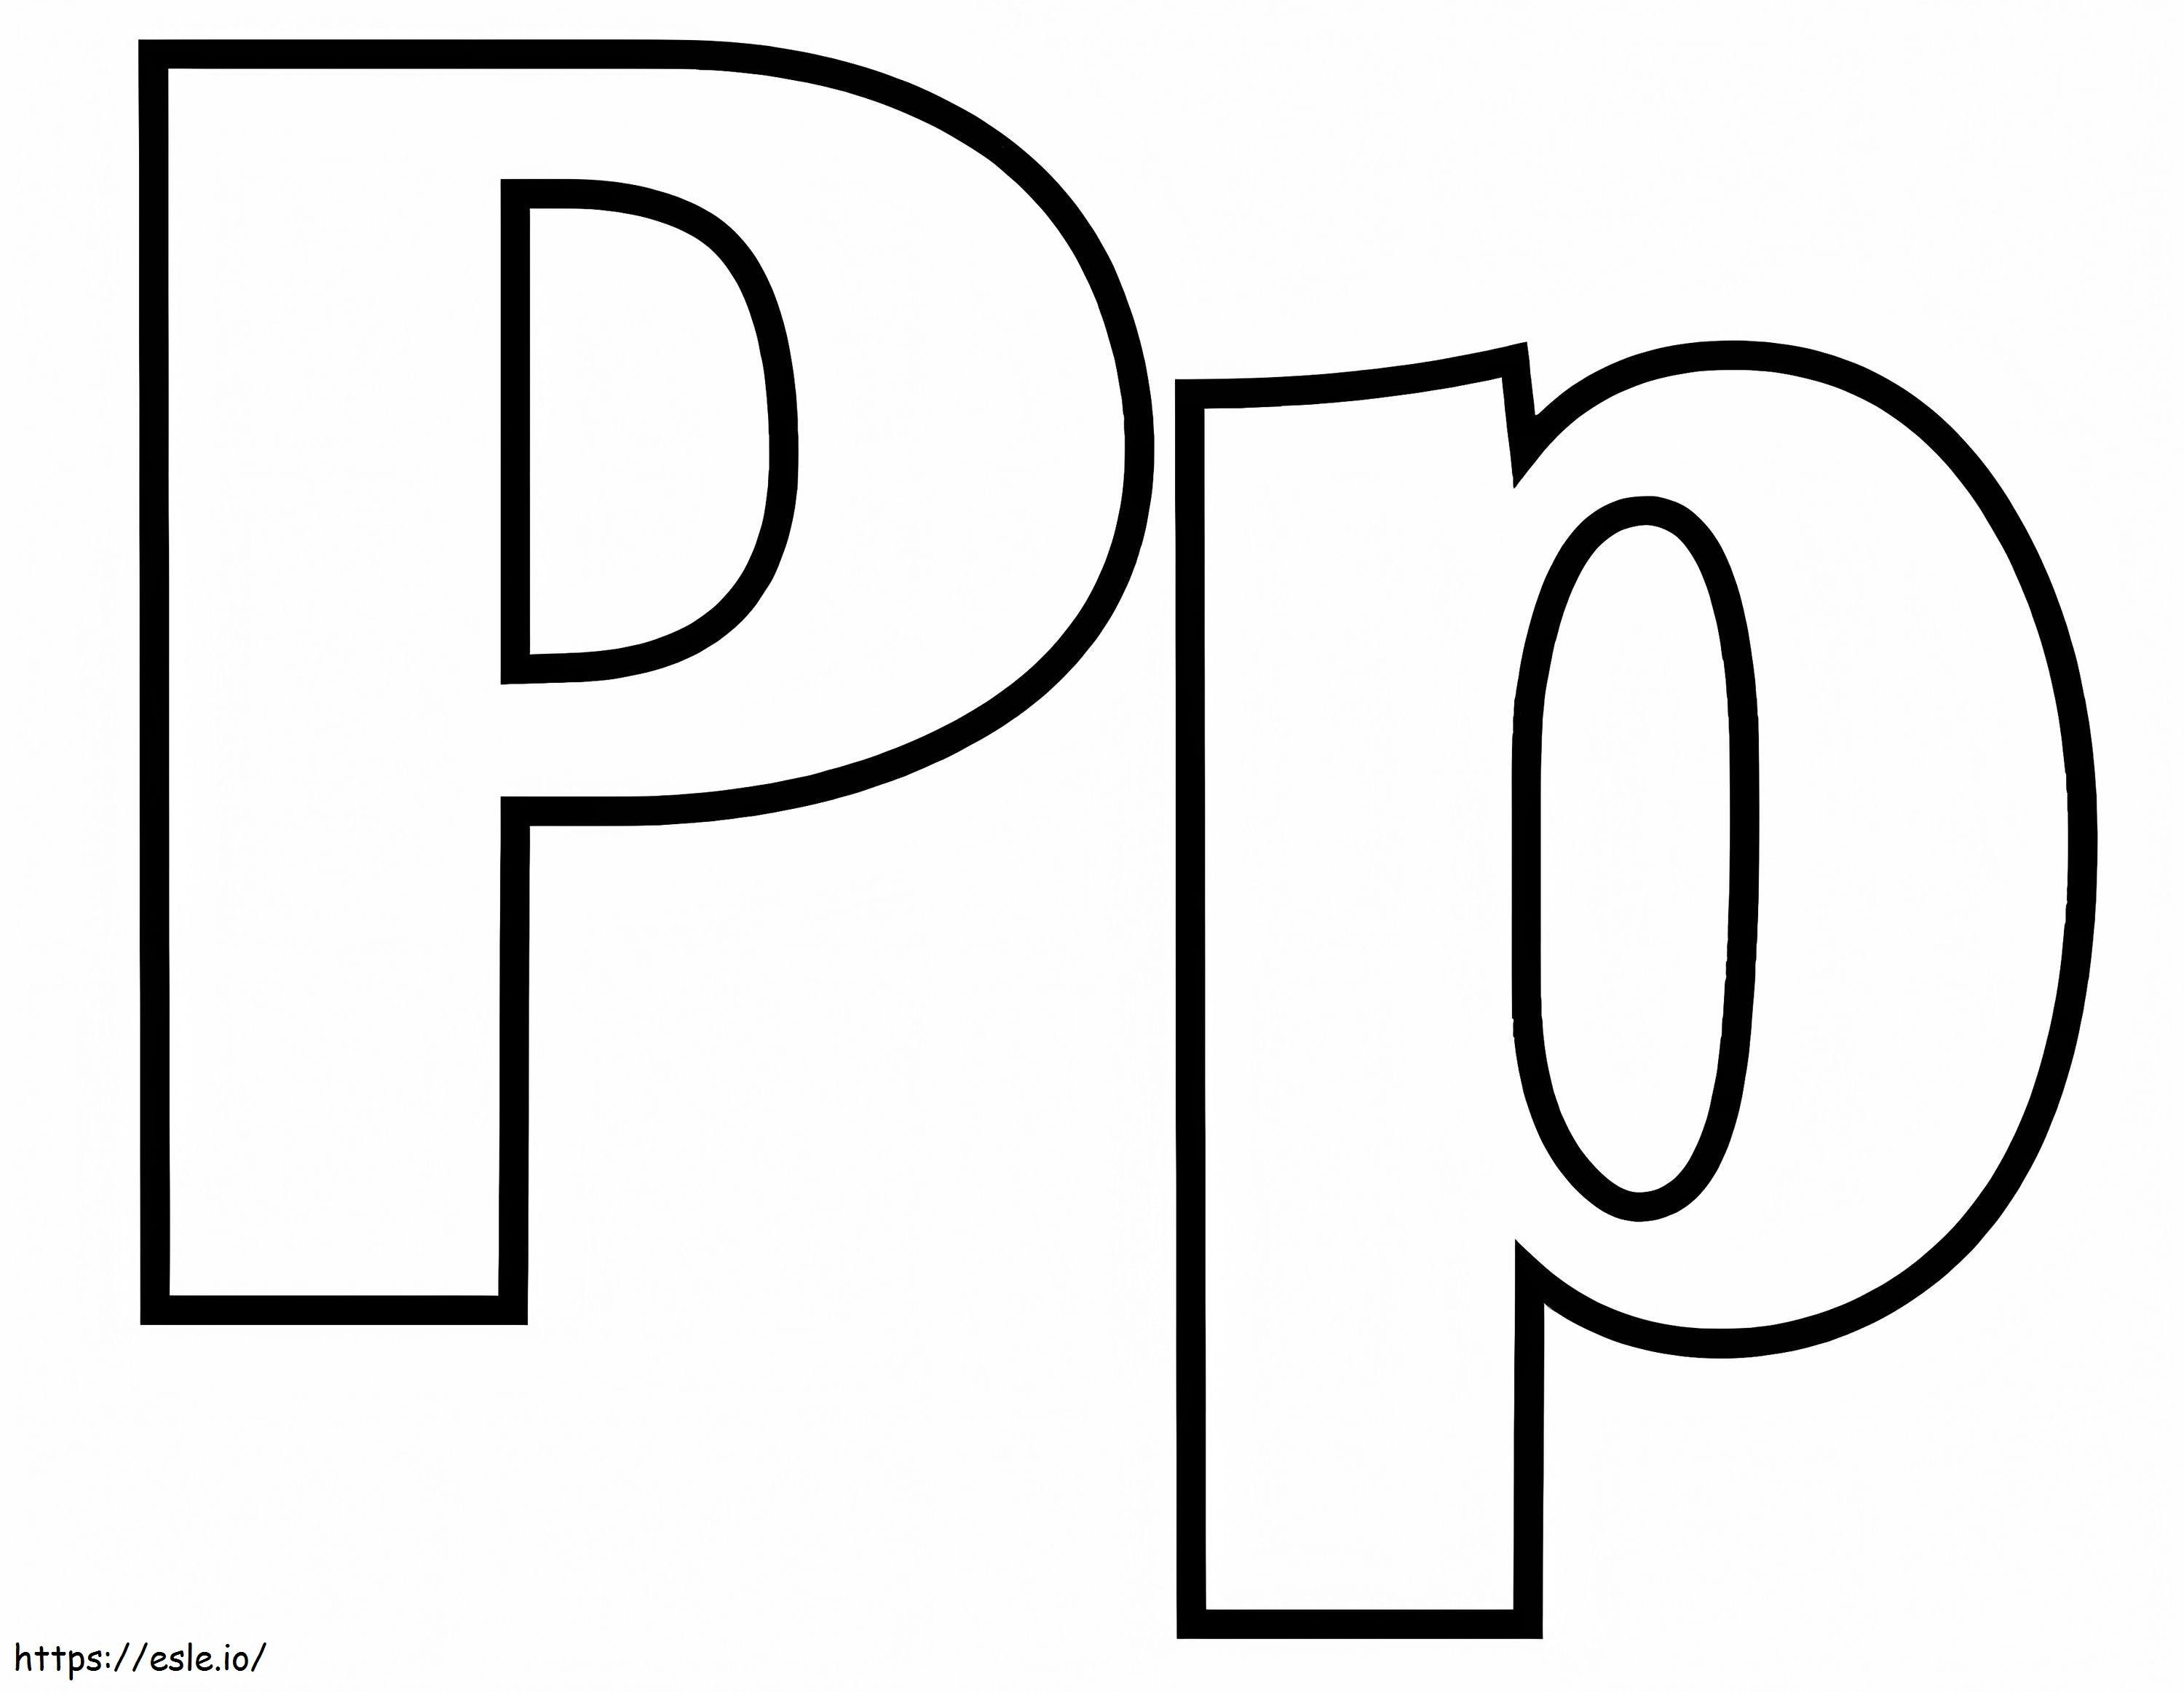 P betű P kifestő